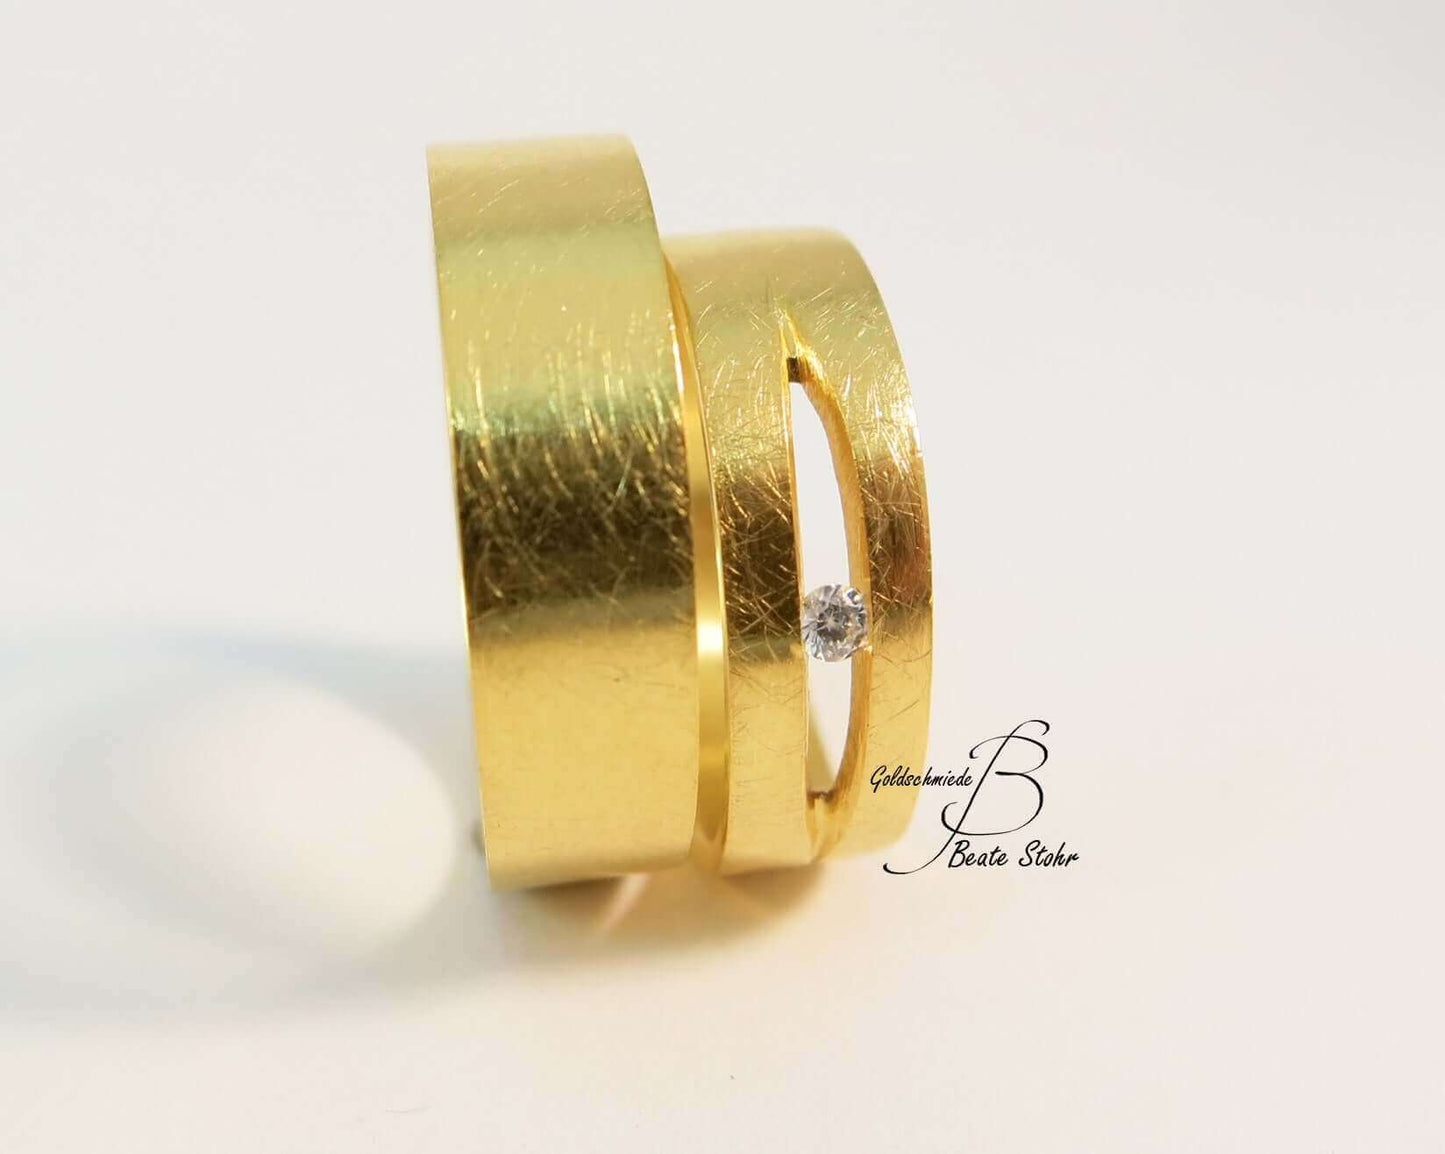 Diamantring Aus Gelbgold | Gelber Ring | Traumschmuckwerkstatt Shop